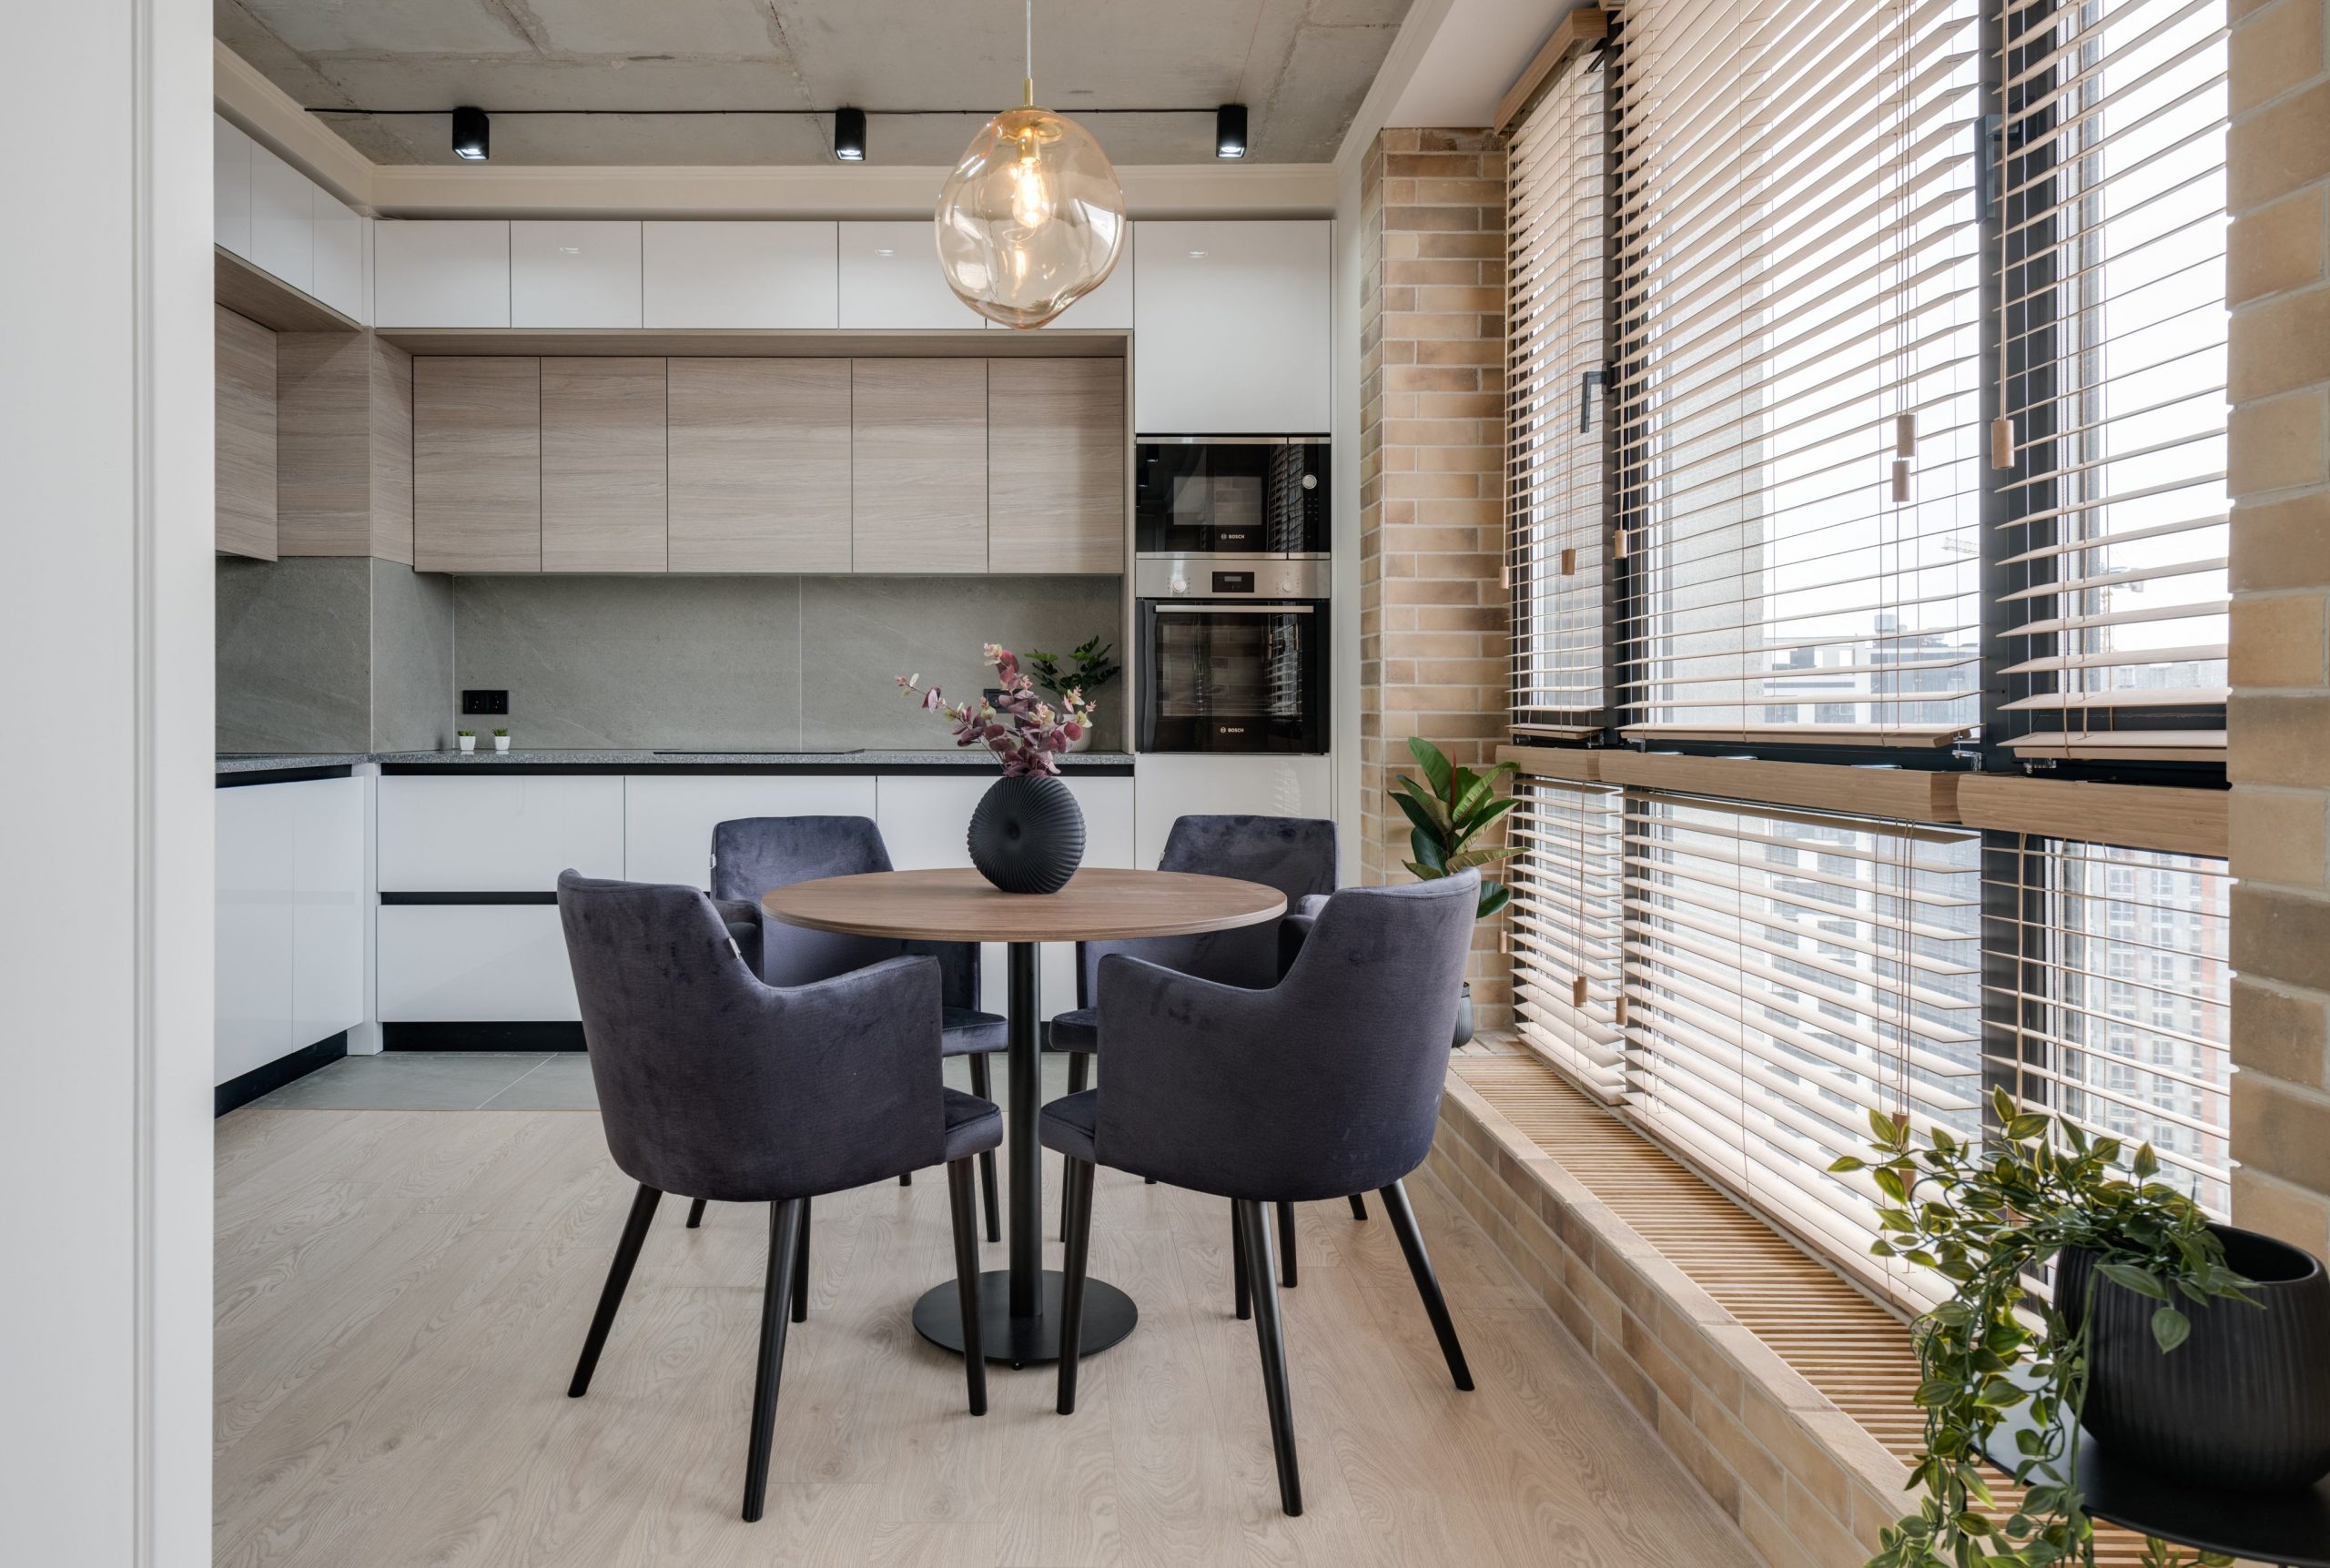 Persianas Yarax modelo horizontal de PVC colocado en ventanales que van del techo al piso que permiten iluminar cocina integral y ante-comedor de departamento moderno.